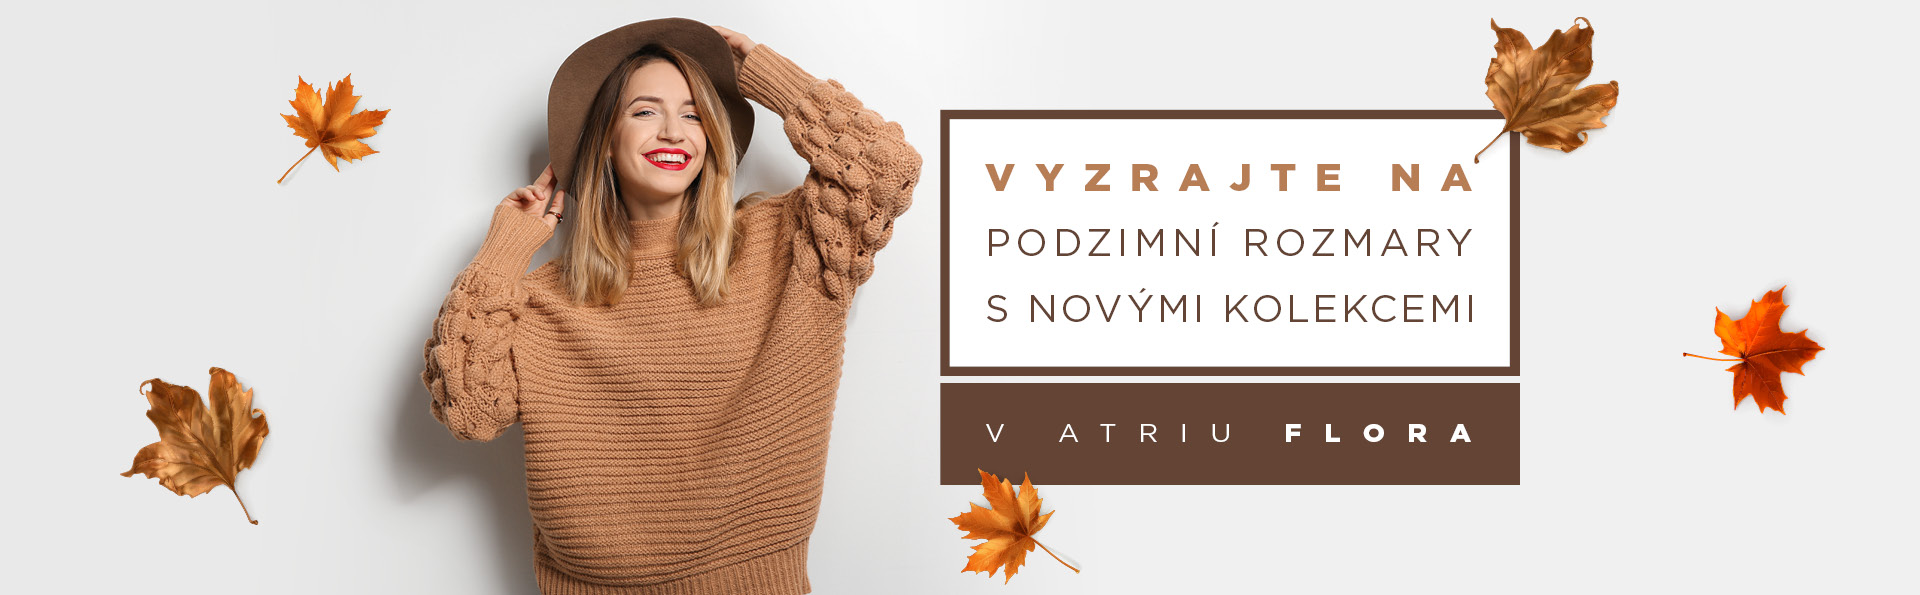 Lákavé podzimní trendy v Atriu Flora -Vinohradská 2828/151, Praha 3